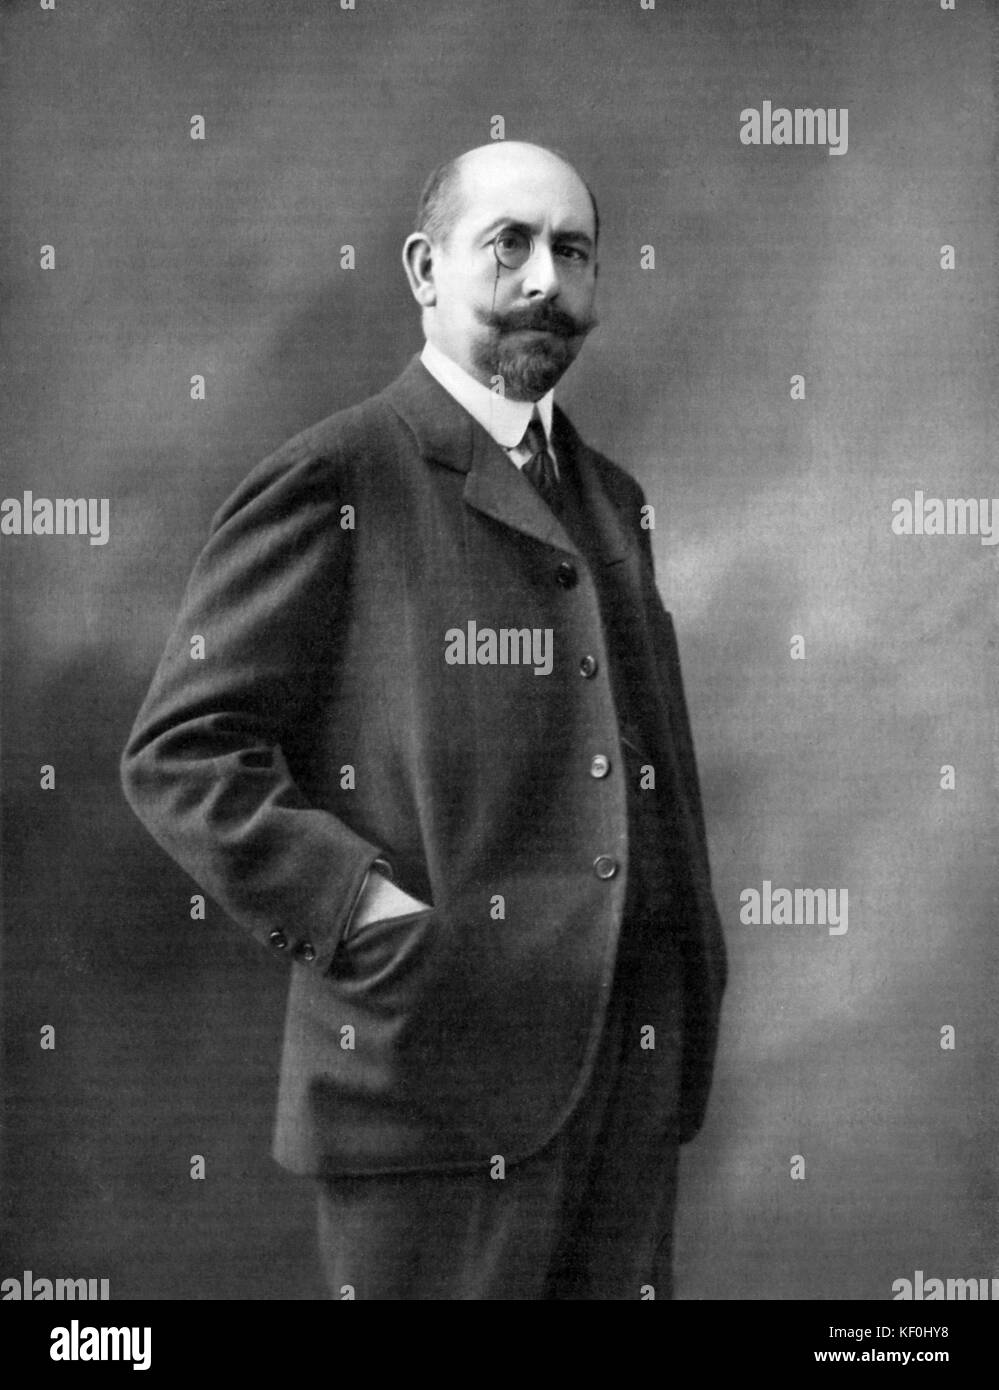 Alfred Capus (25 novembre 1858 - 1 novembre 1922), dramaturge et journaliste français. Photo originale par Paul Bayer. Banque D'Images